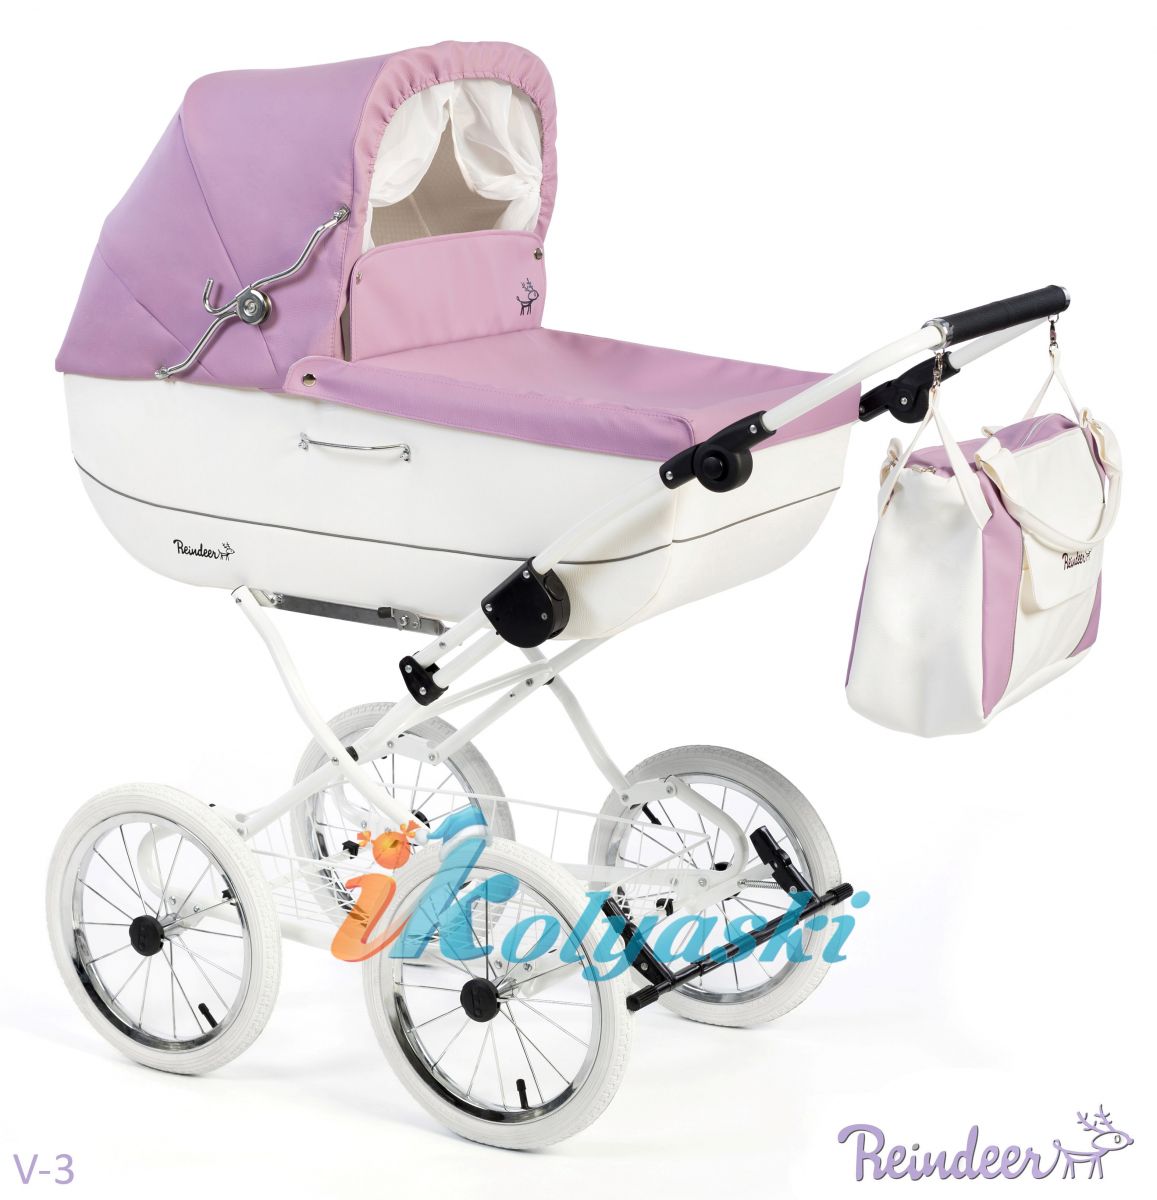 Классическая коляска люлька для новорождённых Reindeer Vintage 1 в 1